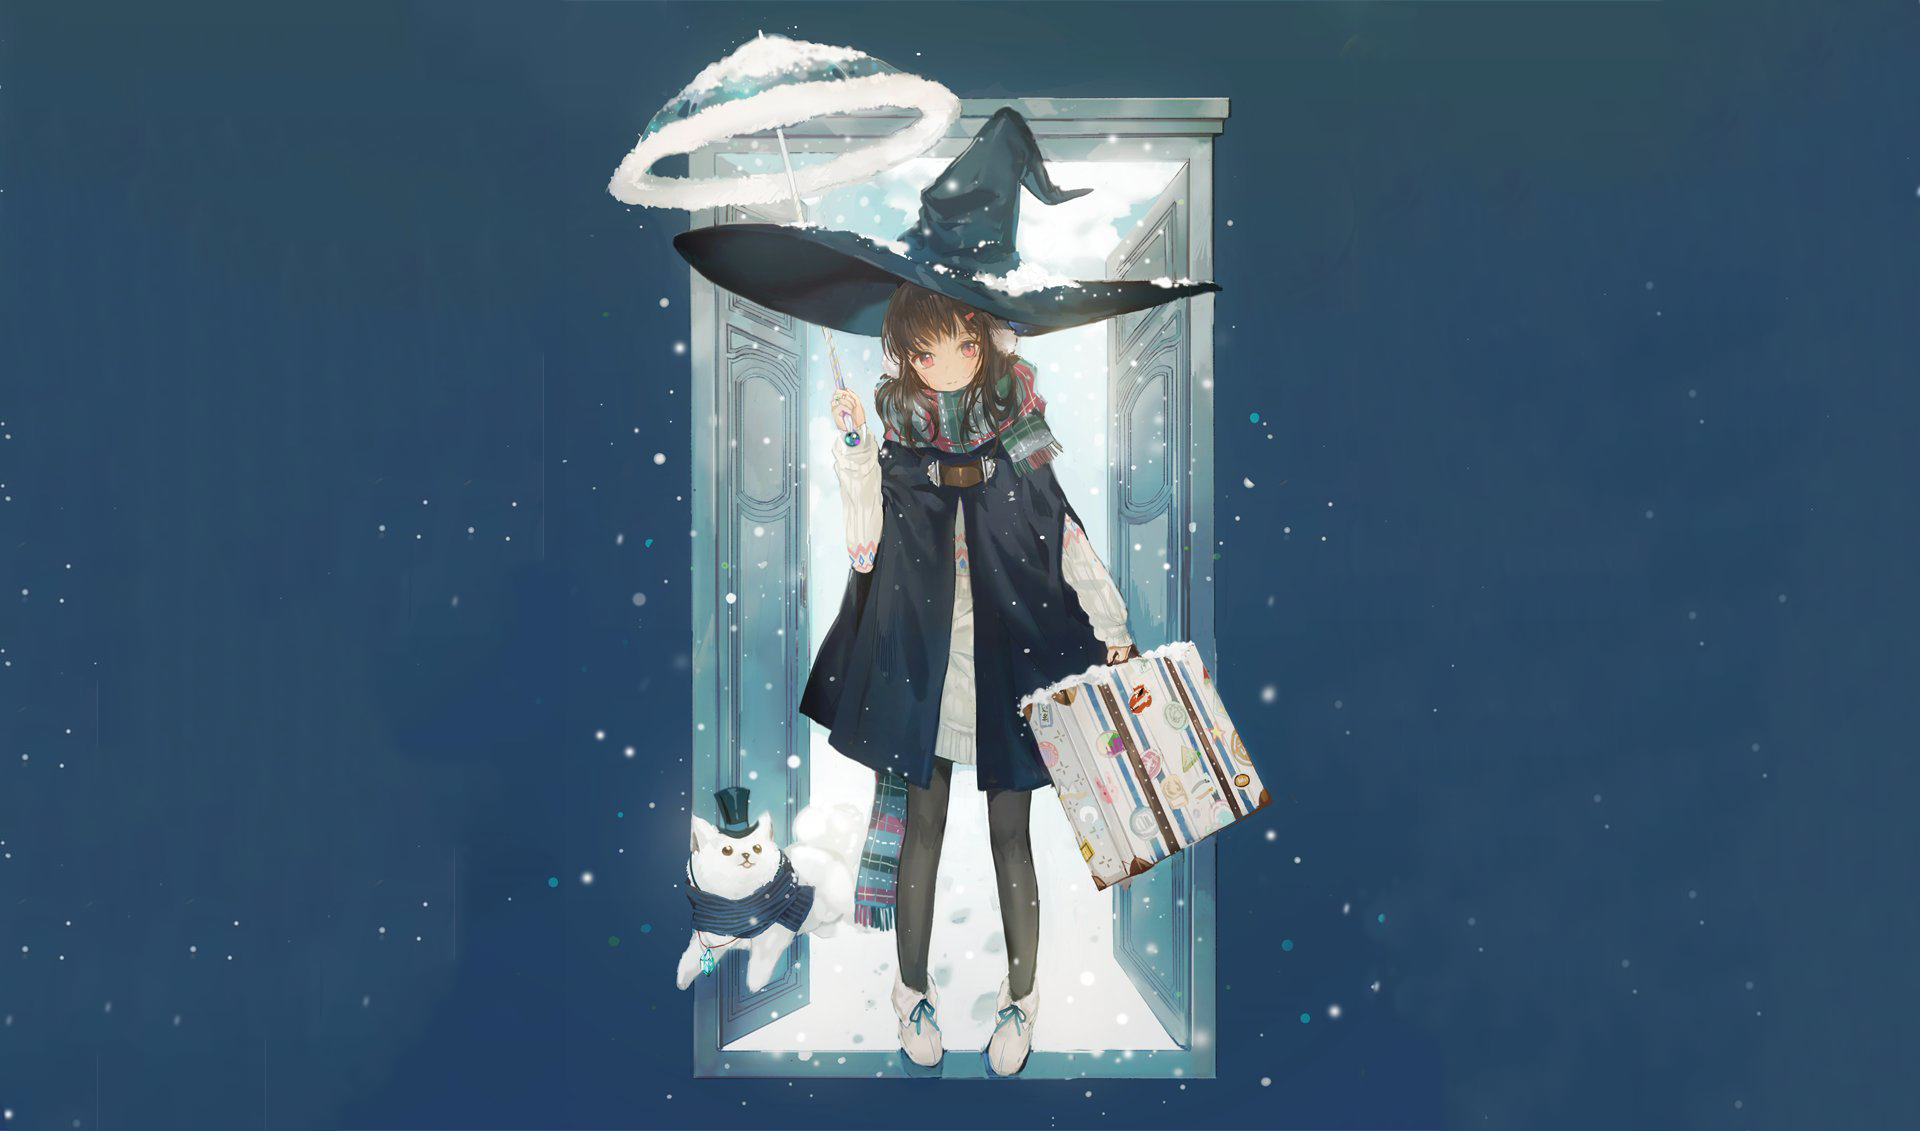 Free download wallpaper Anime, Snow, Cat, Umbrella, Door, Hat, Scarf, Original on your PC desktop